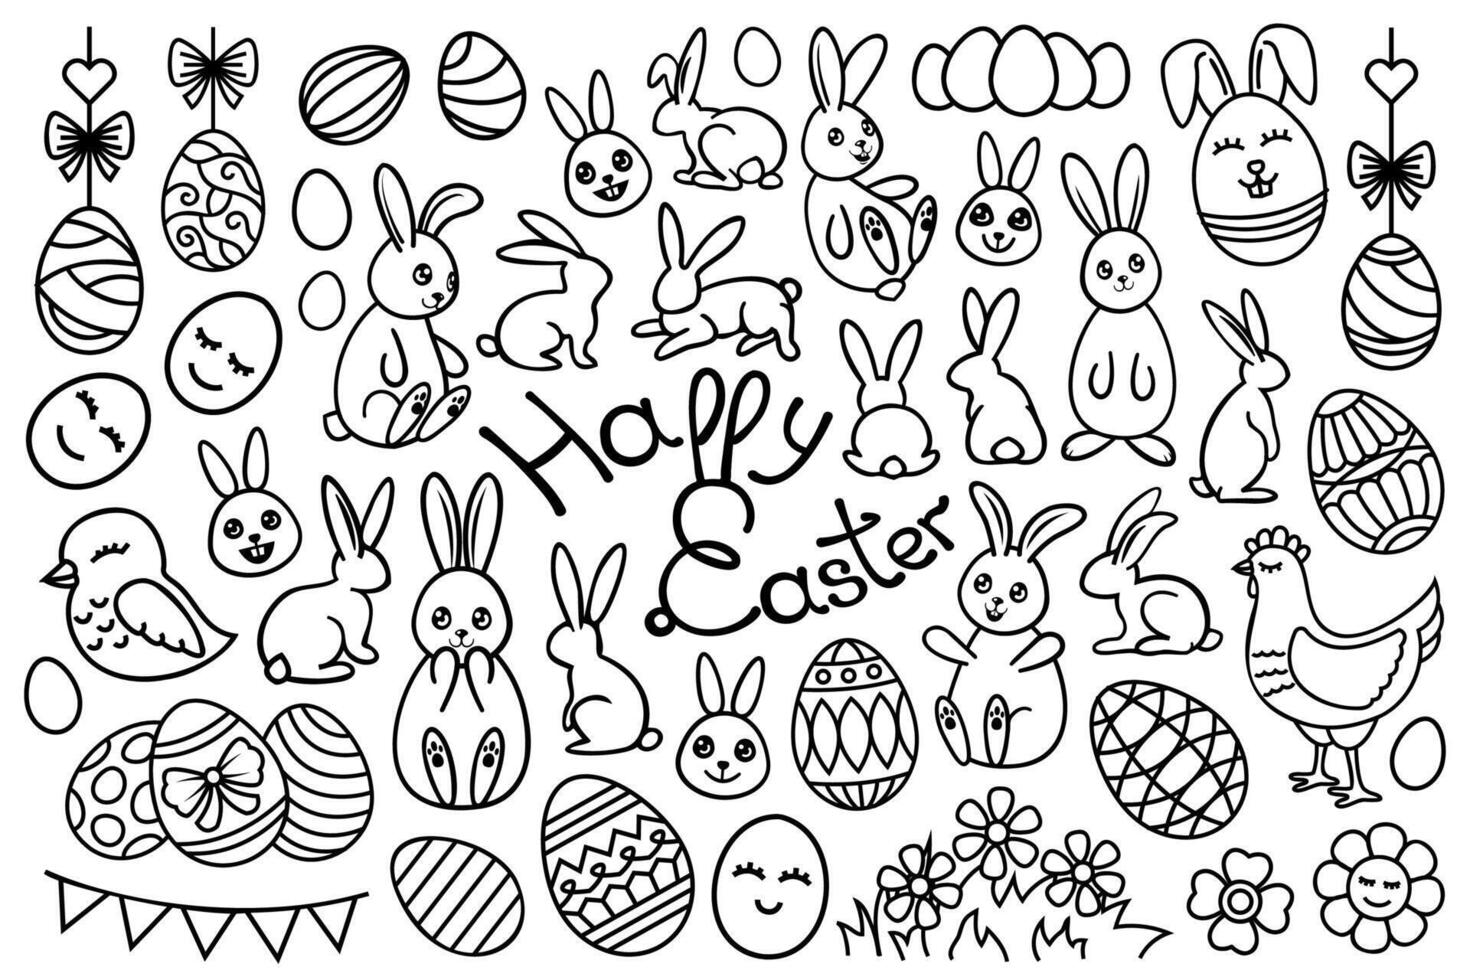 línea Arte Pascua de Resurrección colocar, colección con conejitos, pollos, huevos contorno dibujos. decorativo lineal vector Pascua de Resurrección diseño elementos.